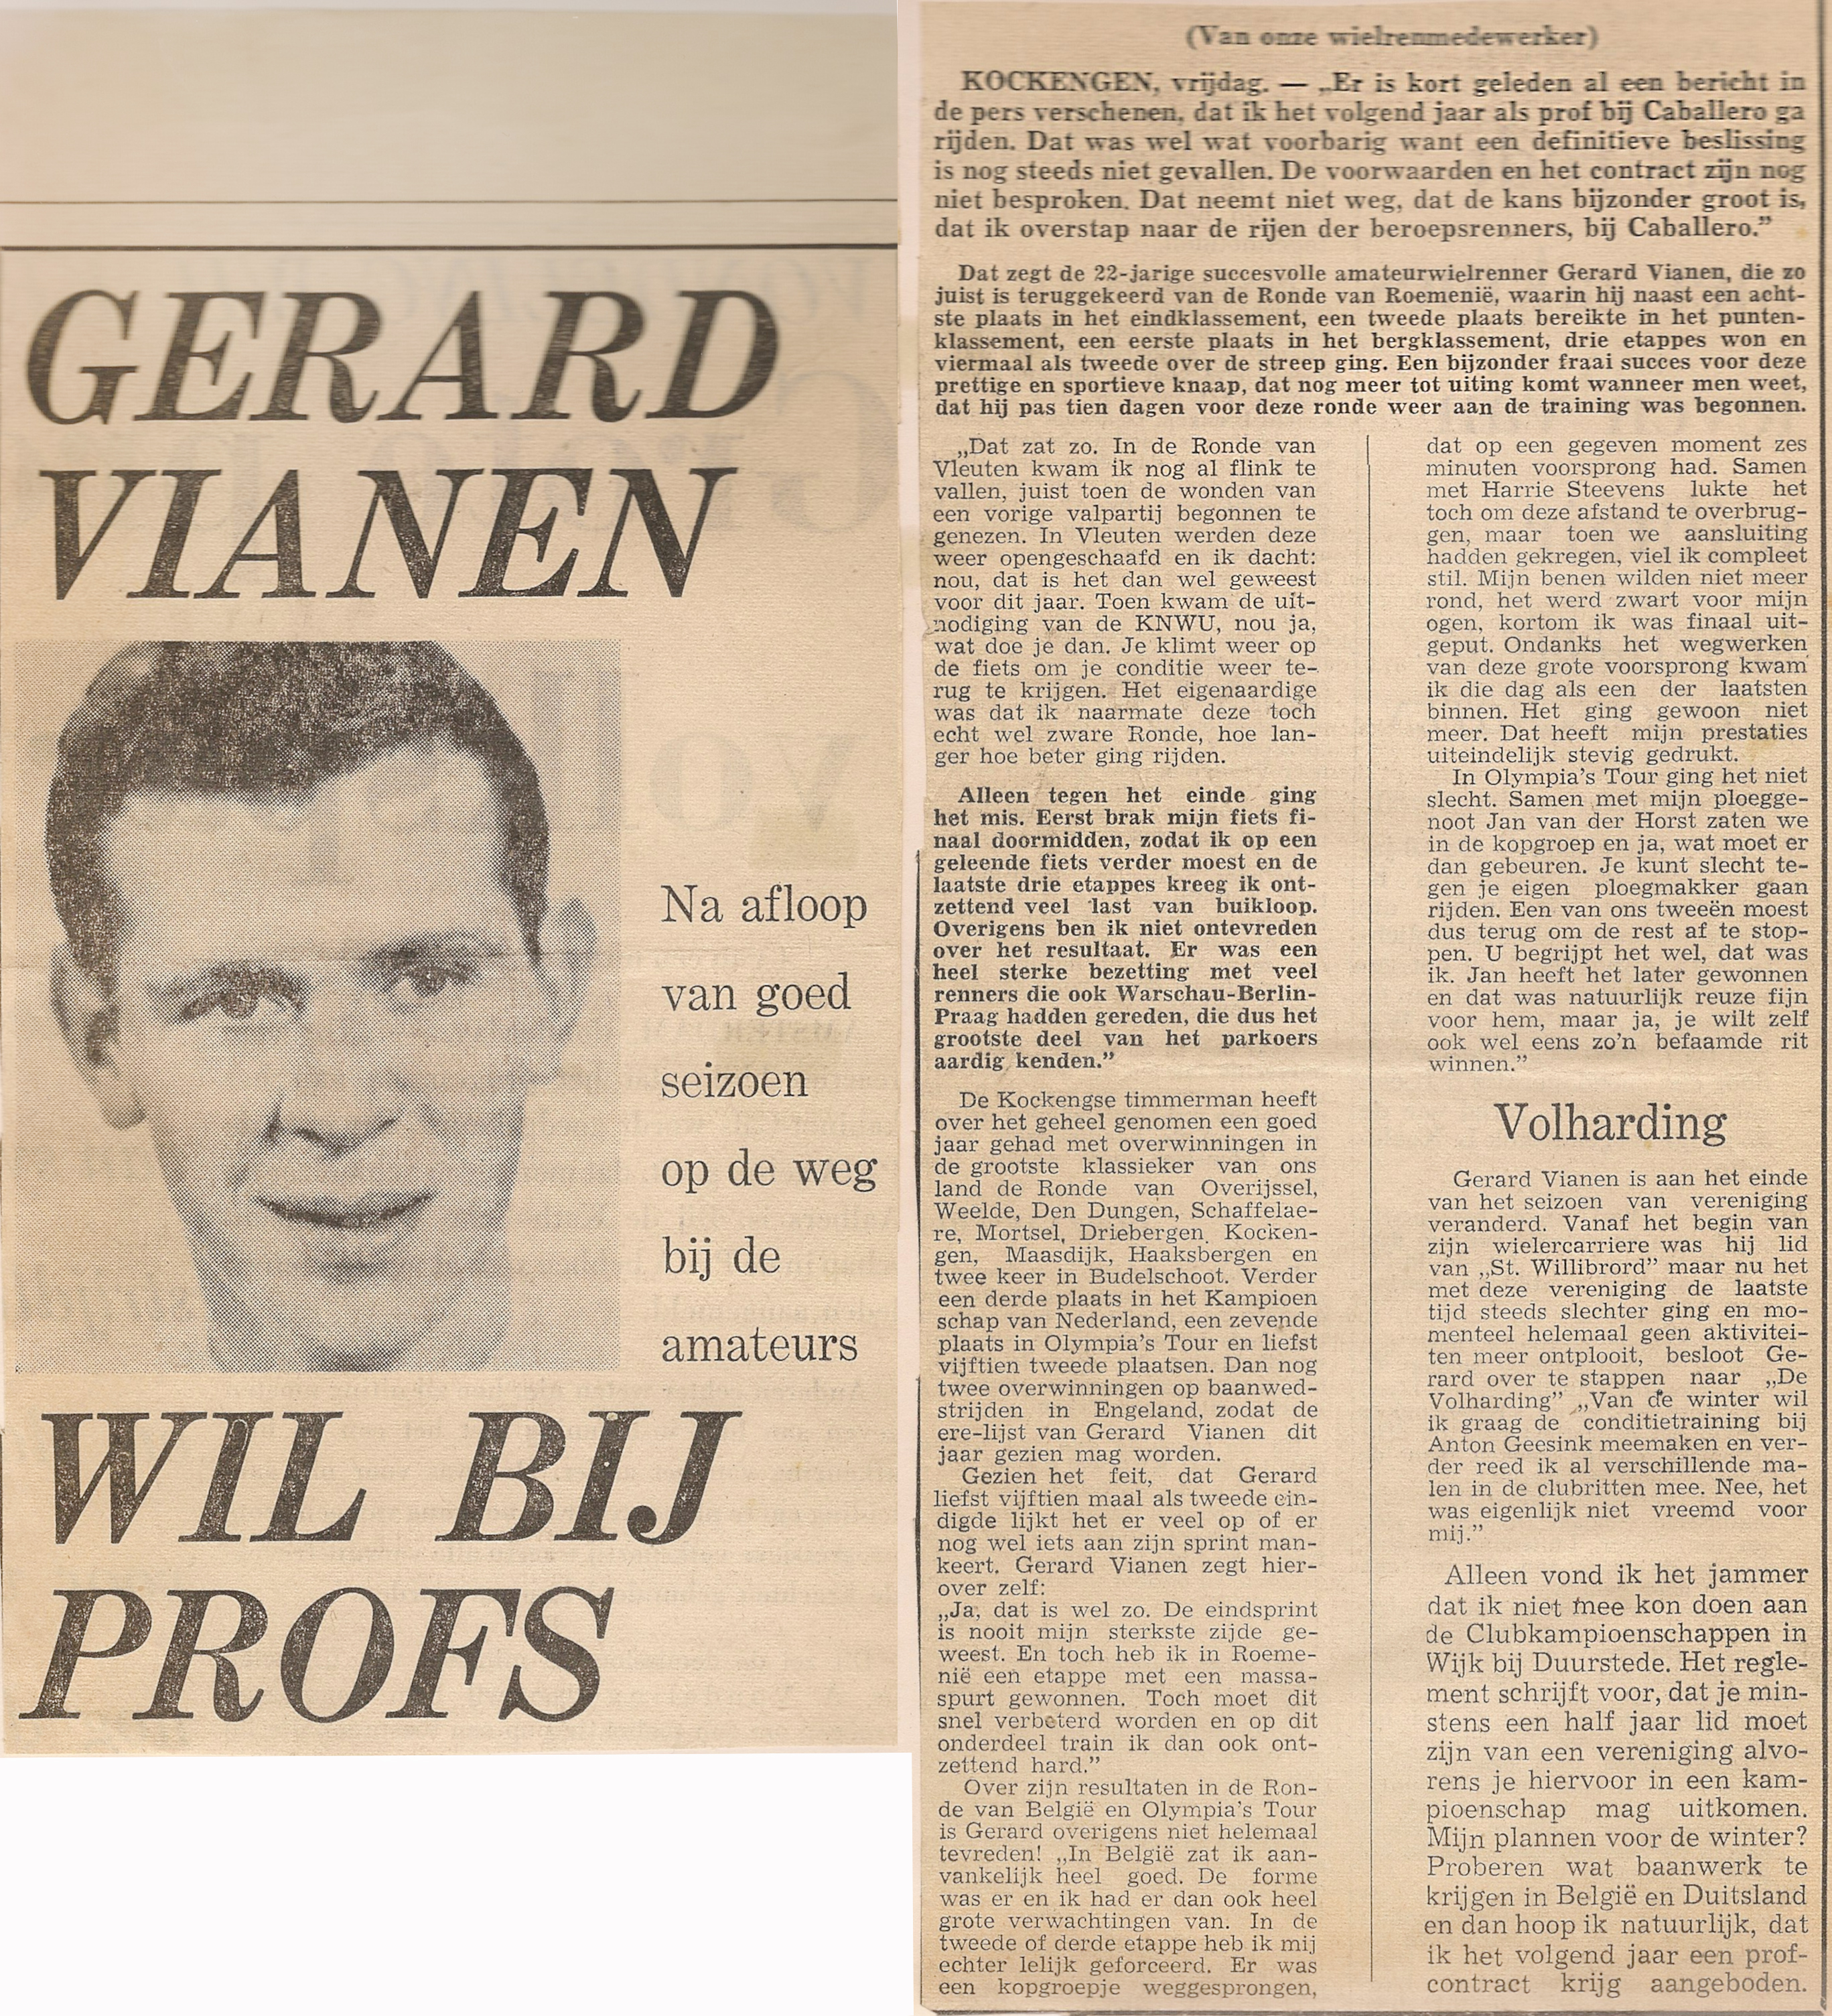 GV_ Gerard Vianen wil bij Profs